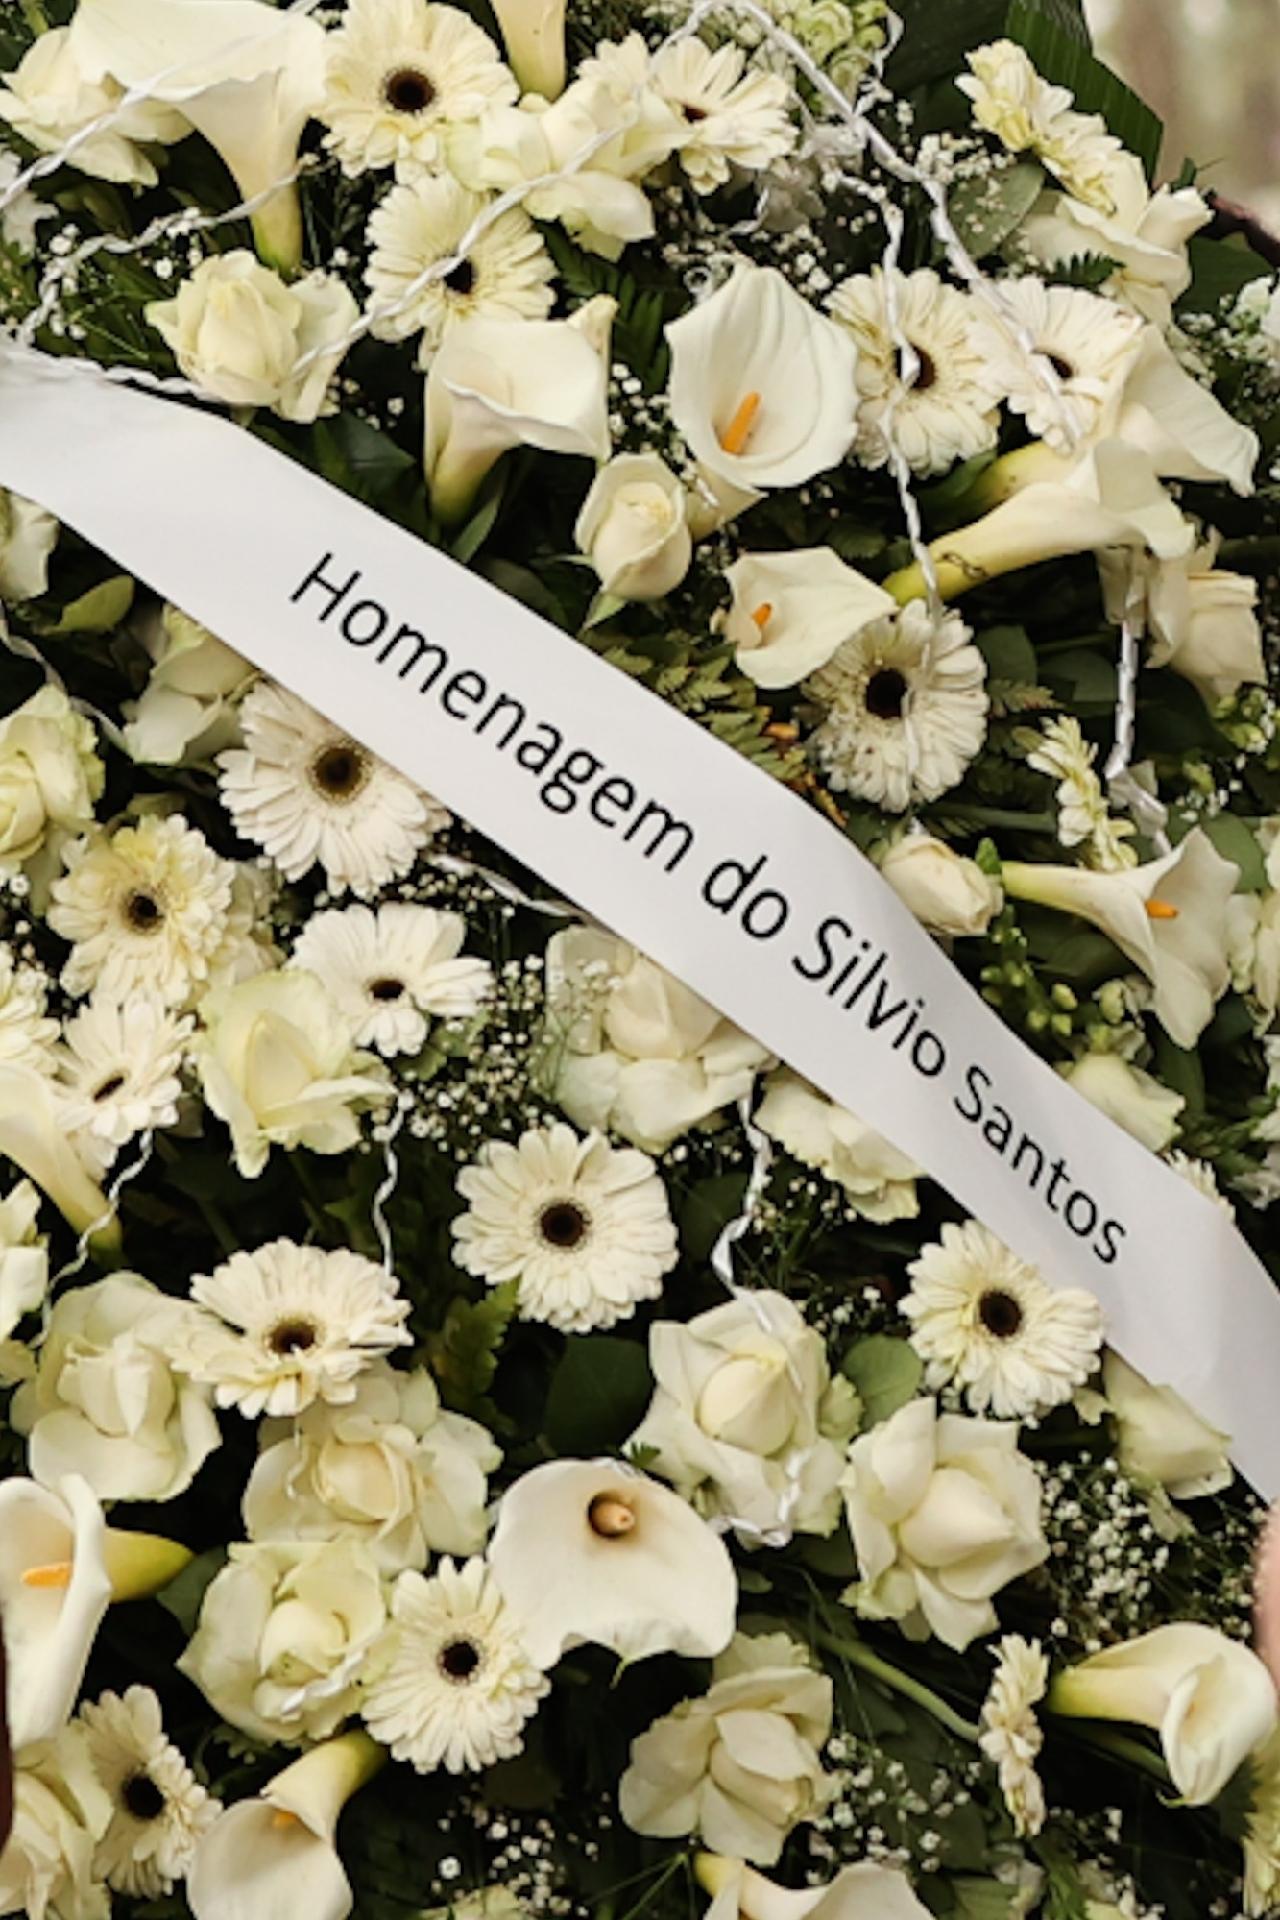 Silvio Santos homenageou J Soares e enviou coroa de flores - Manuela Scarpa/Brazil News